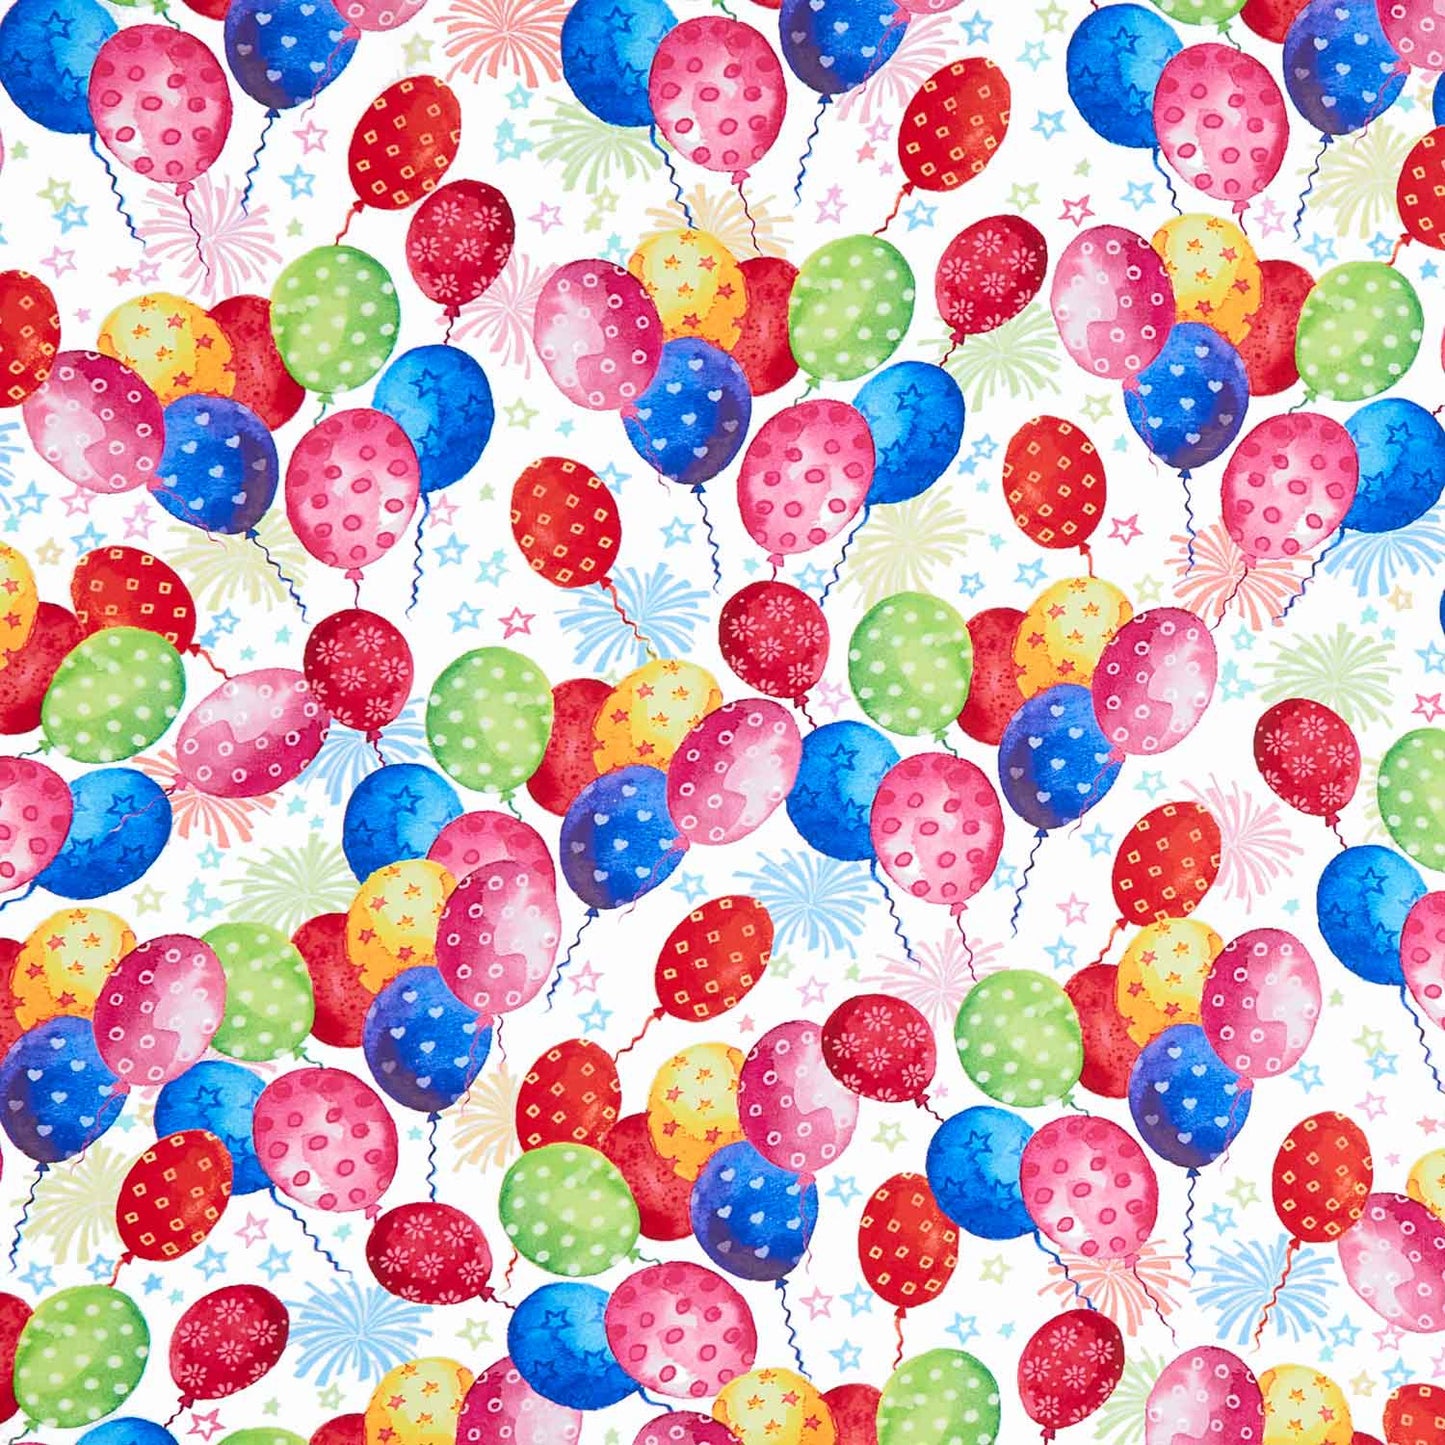 Happy Day - Balloons Celebration Yardage Primary Image